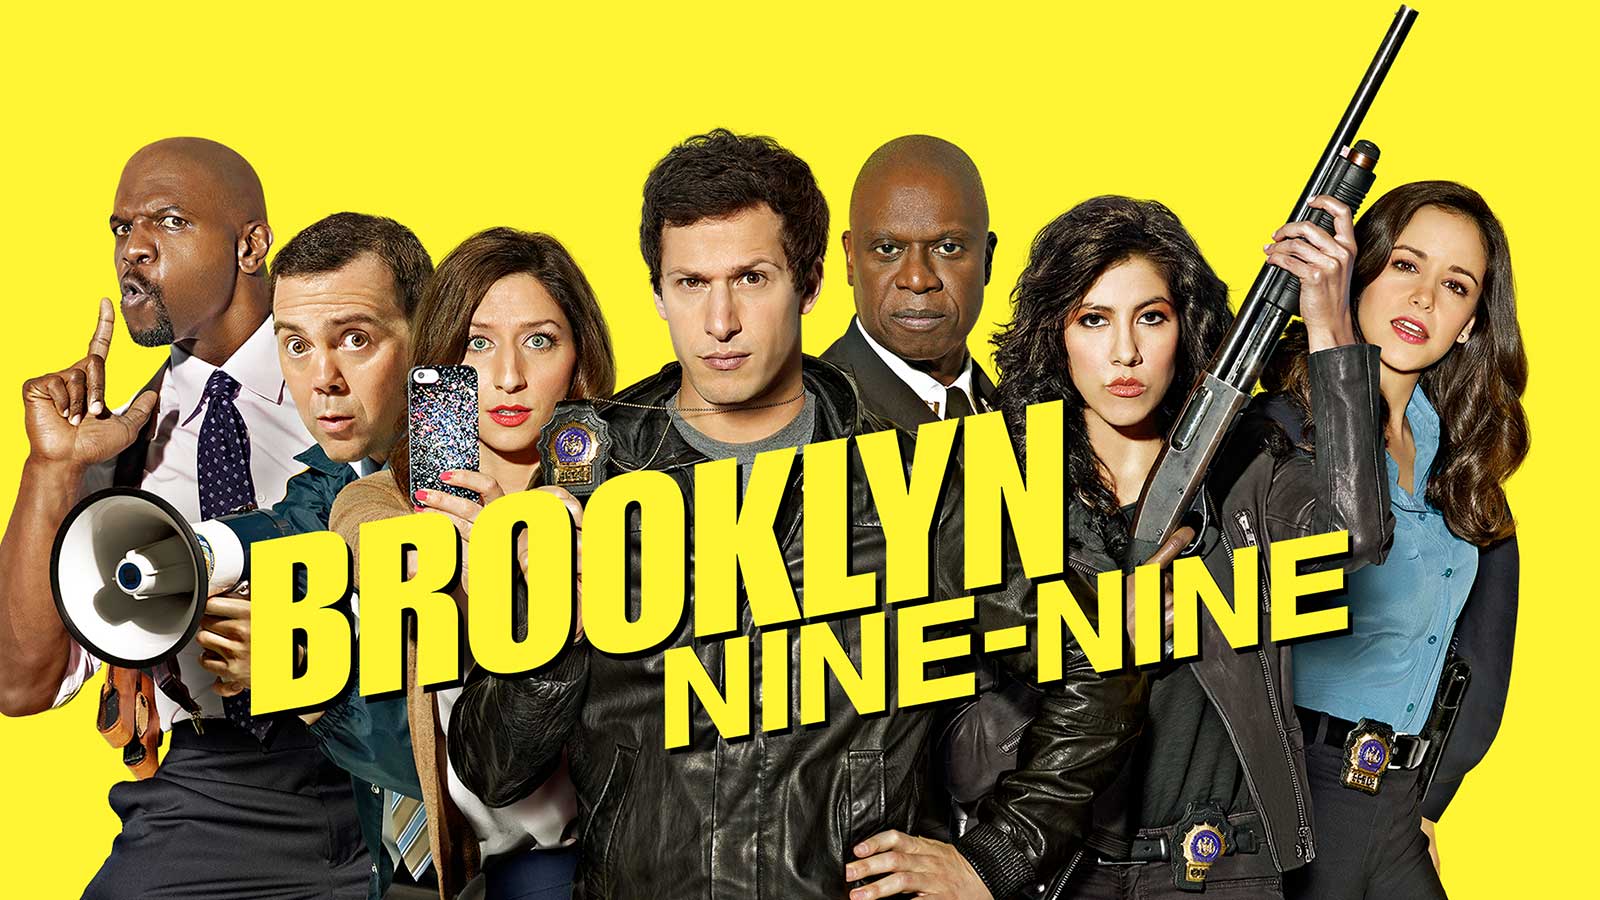  Brooklyn Nine-Nine è una serie televisiva statunitense del 2013-2021. 